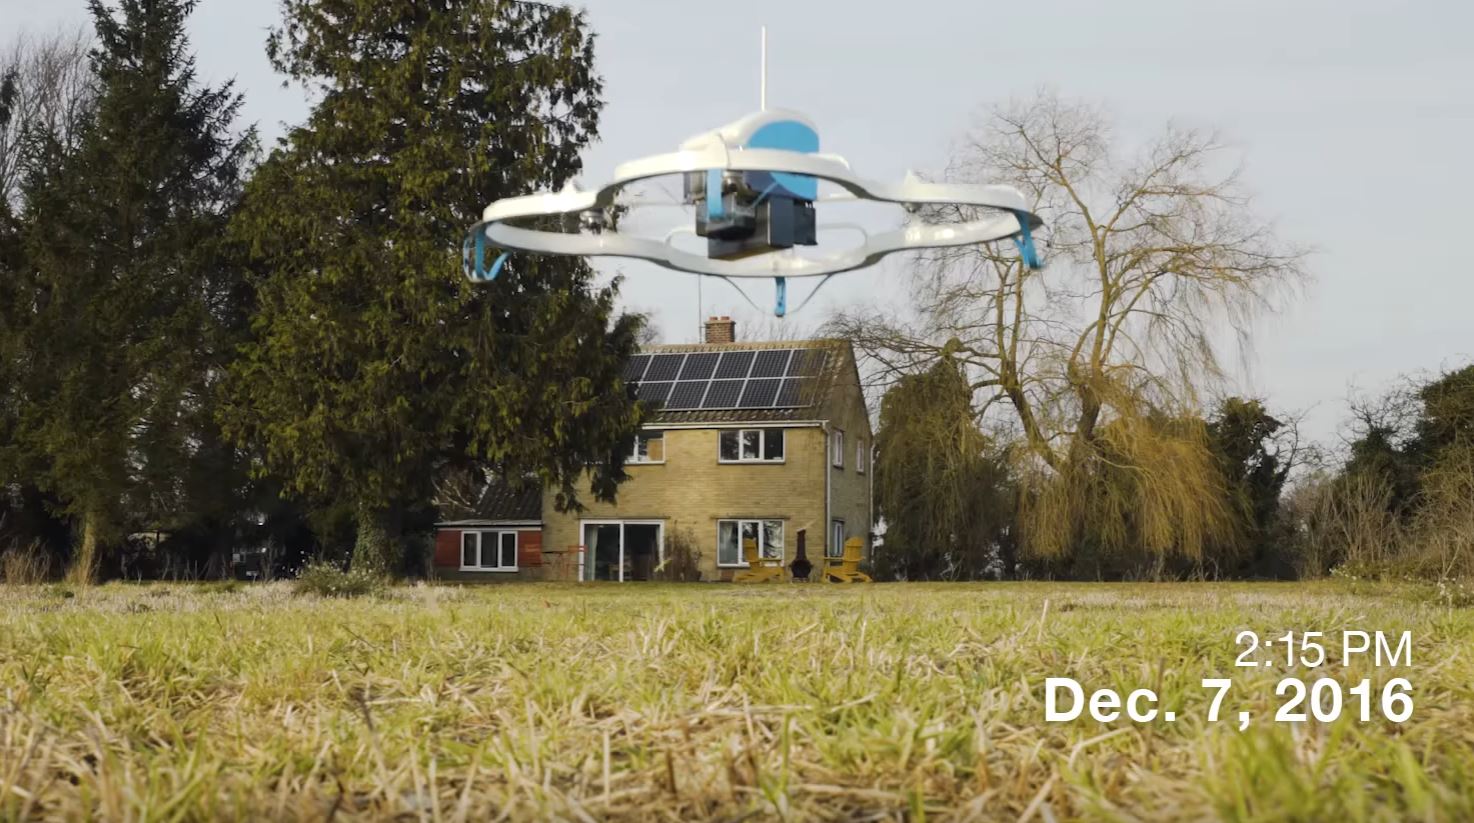 Le drone est capable de transporter une charge de 2,3 kilos de manière totalement autonome du dépôt à votre domicile.